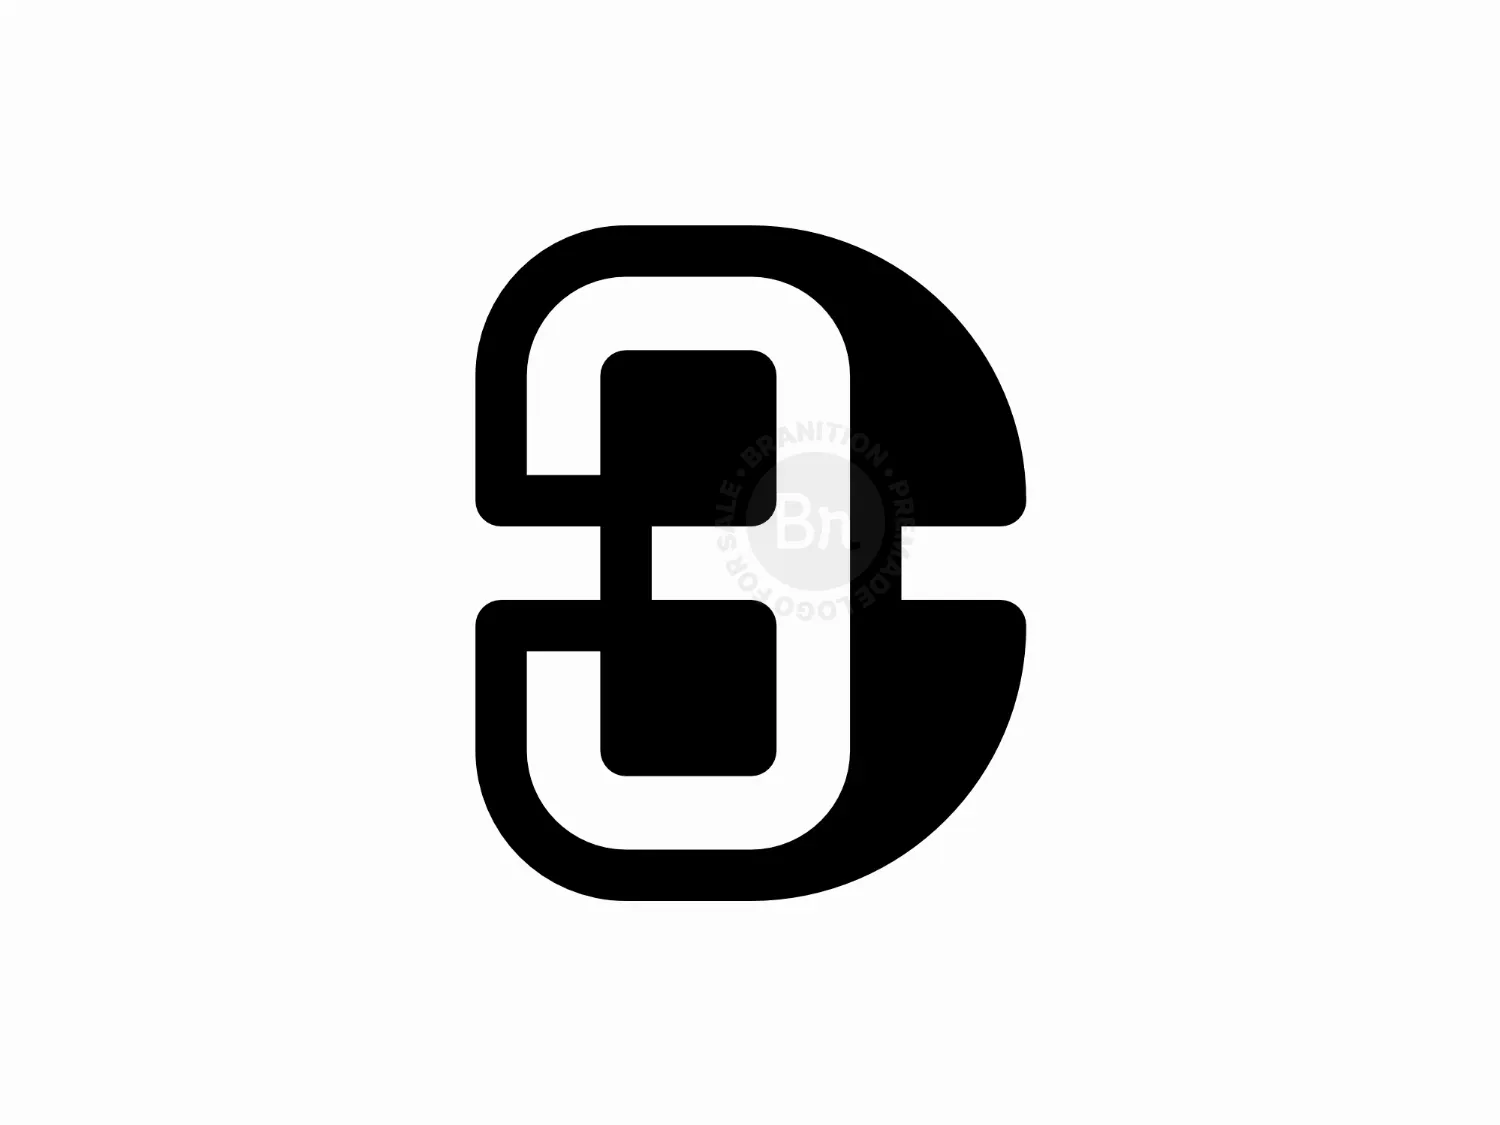 Minimalist Letter C3 Or 3c Monogram Logo